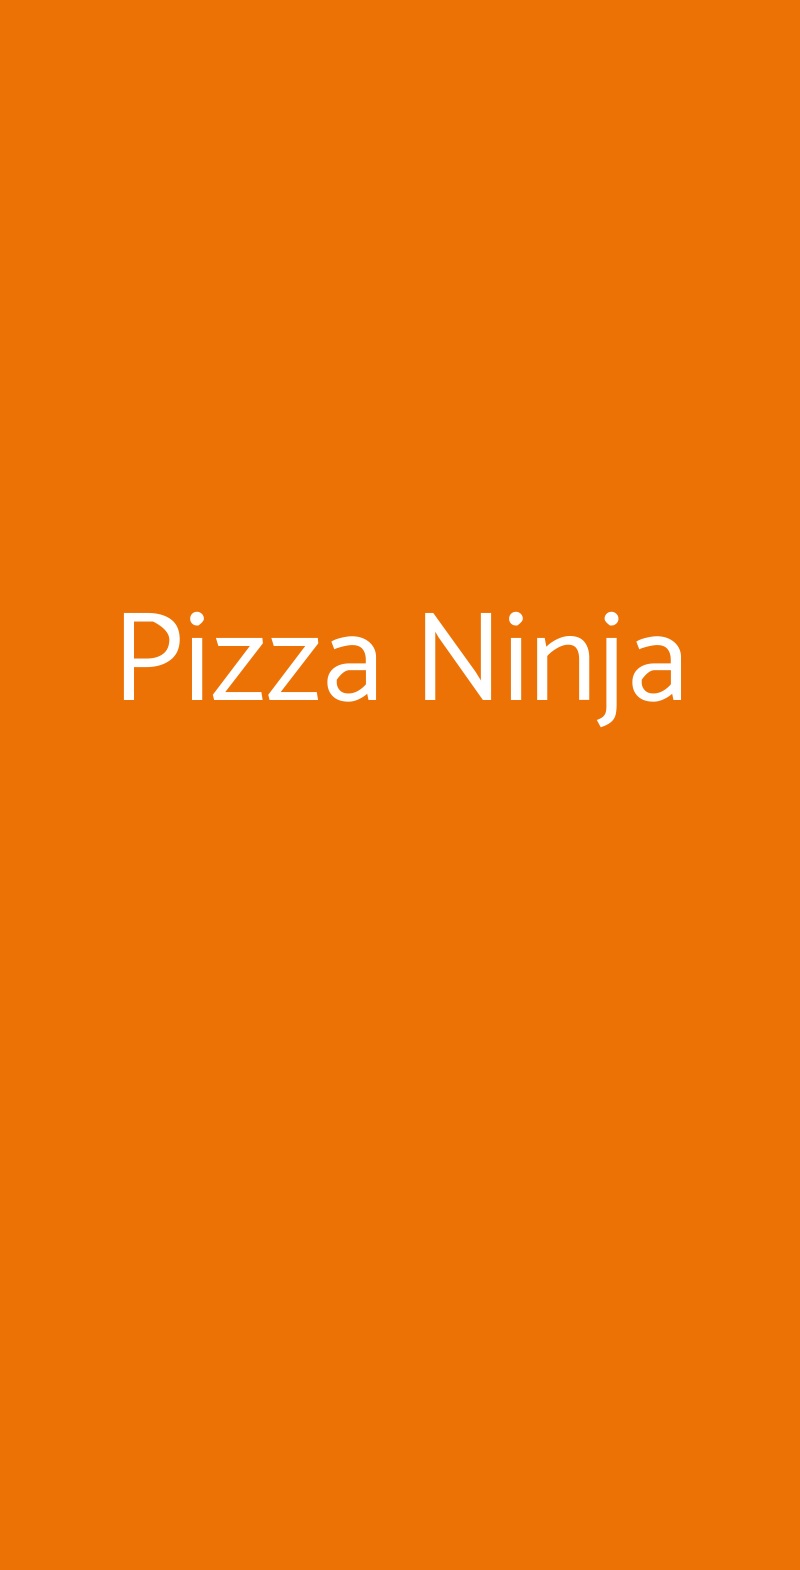 Pizza Ninja Roma menù 1 pagina